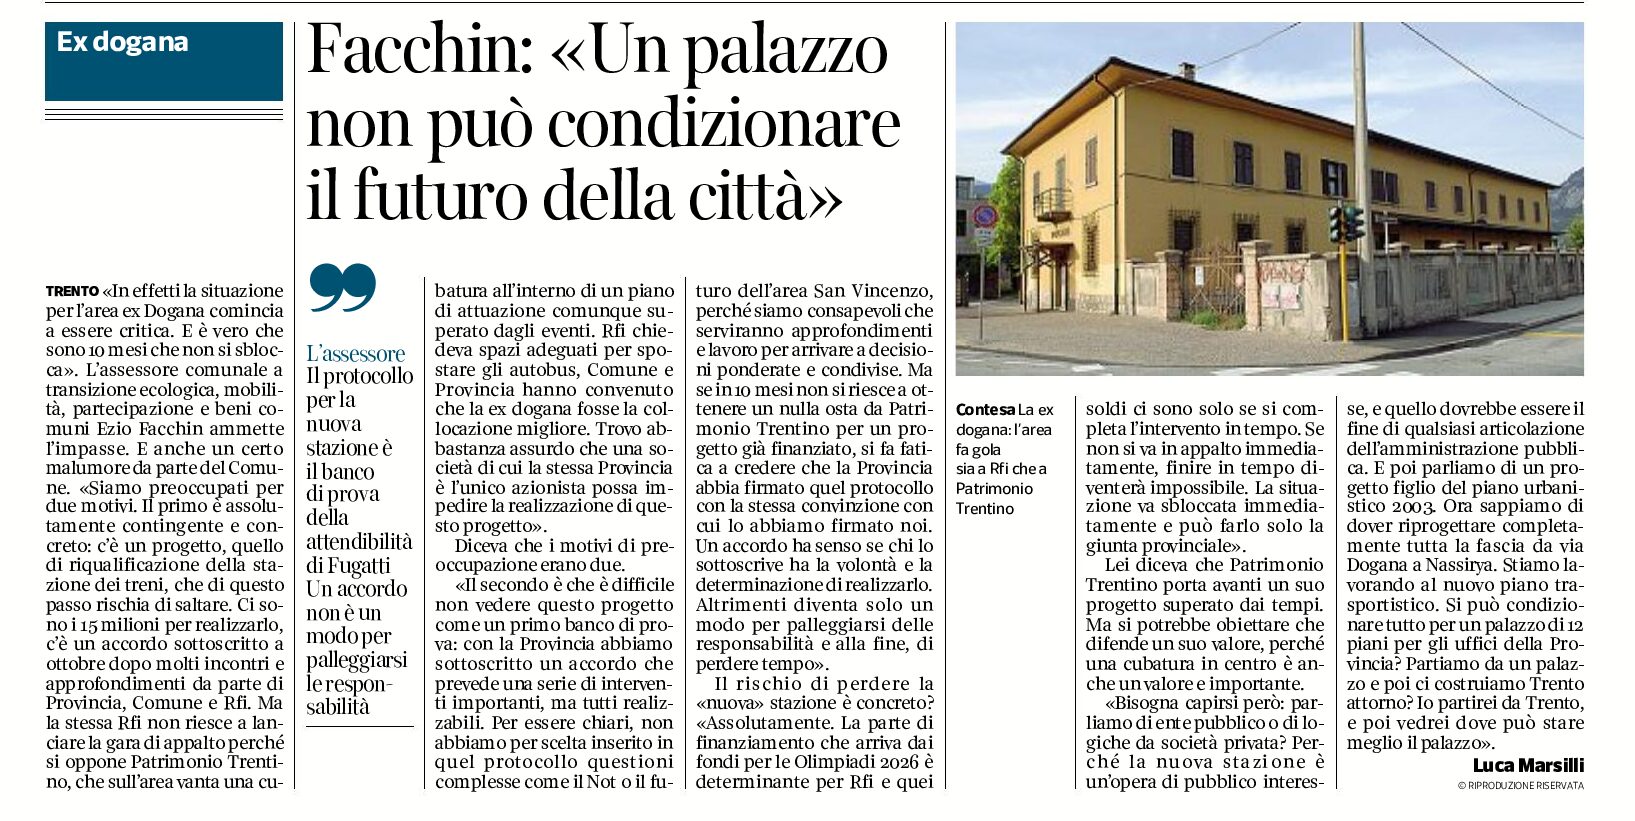 Trento, Facchin: “un palazzo non può condizionare il futuro della città”